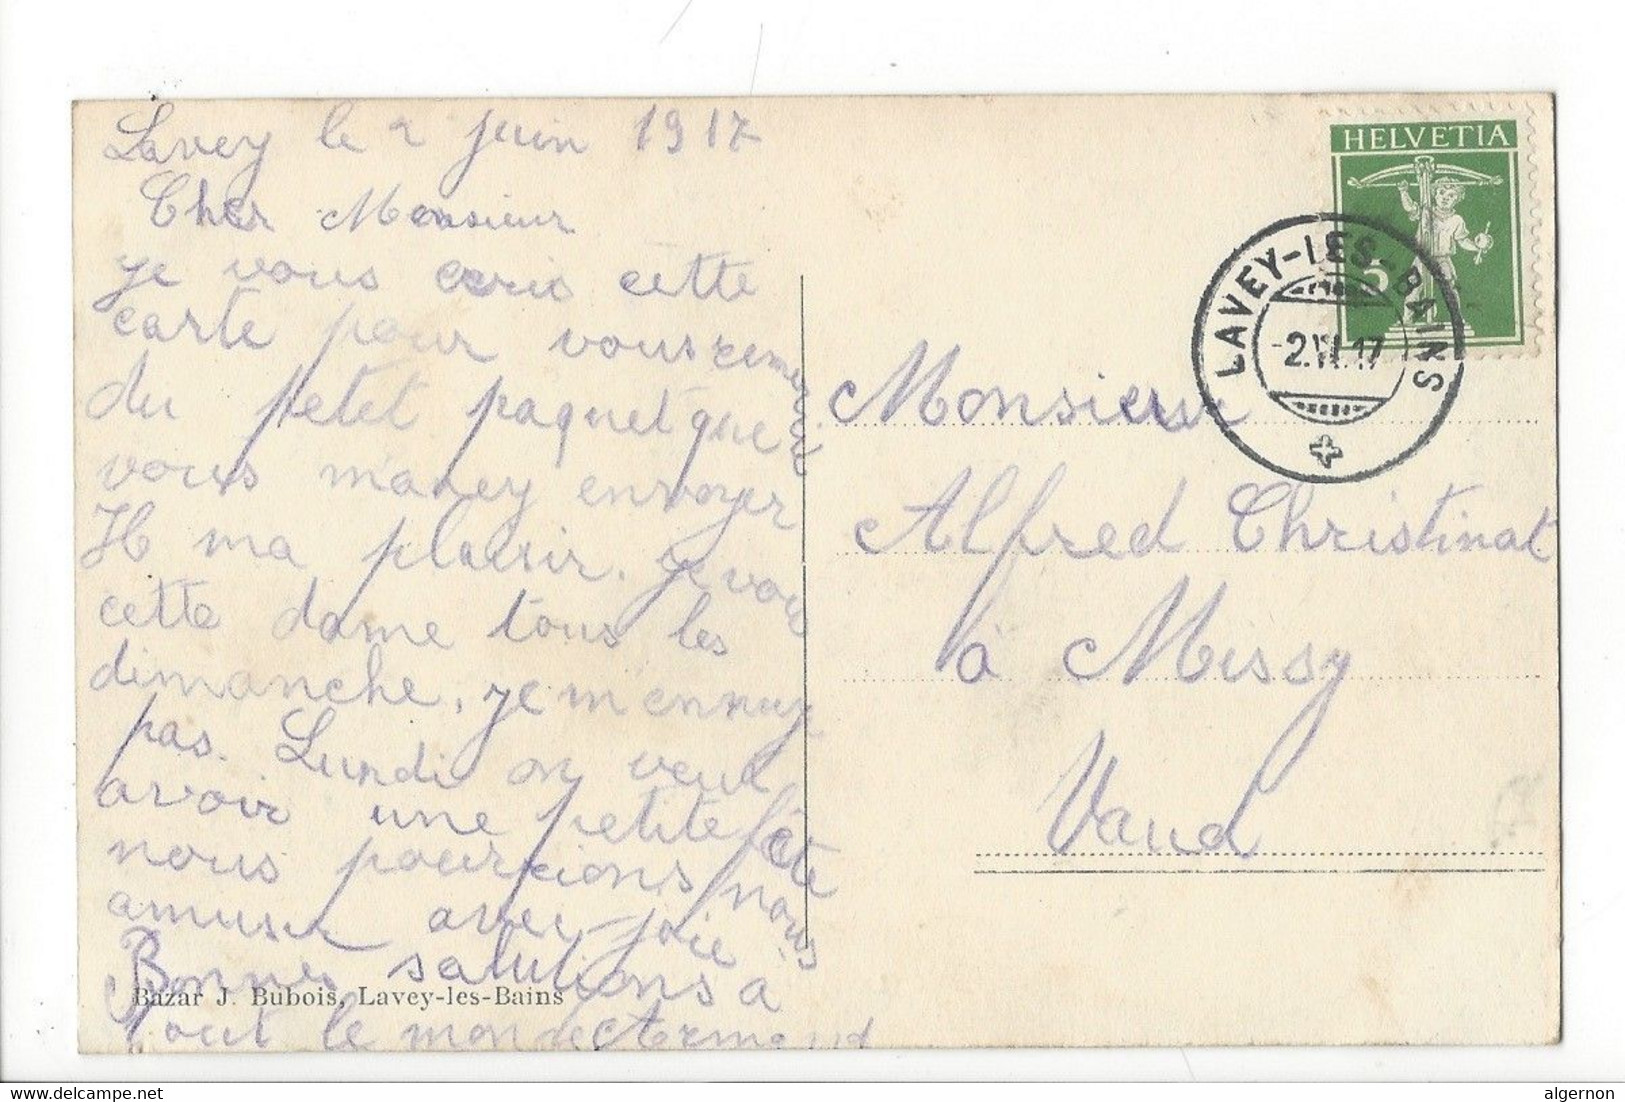 30470 - Lavey-les-Bains Hôpital Circulée 1917 - Lavey